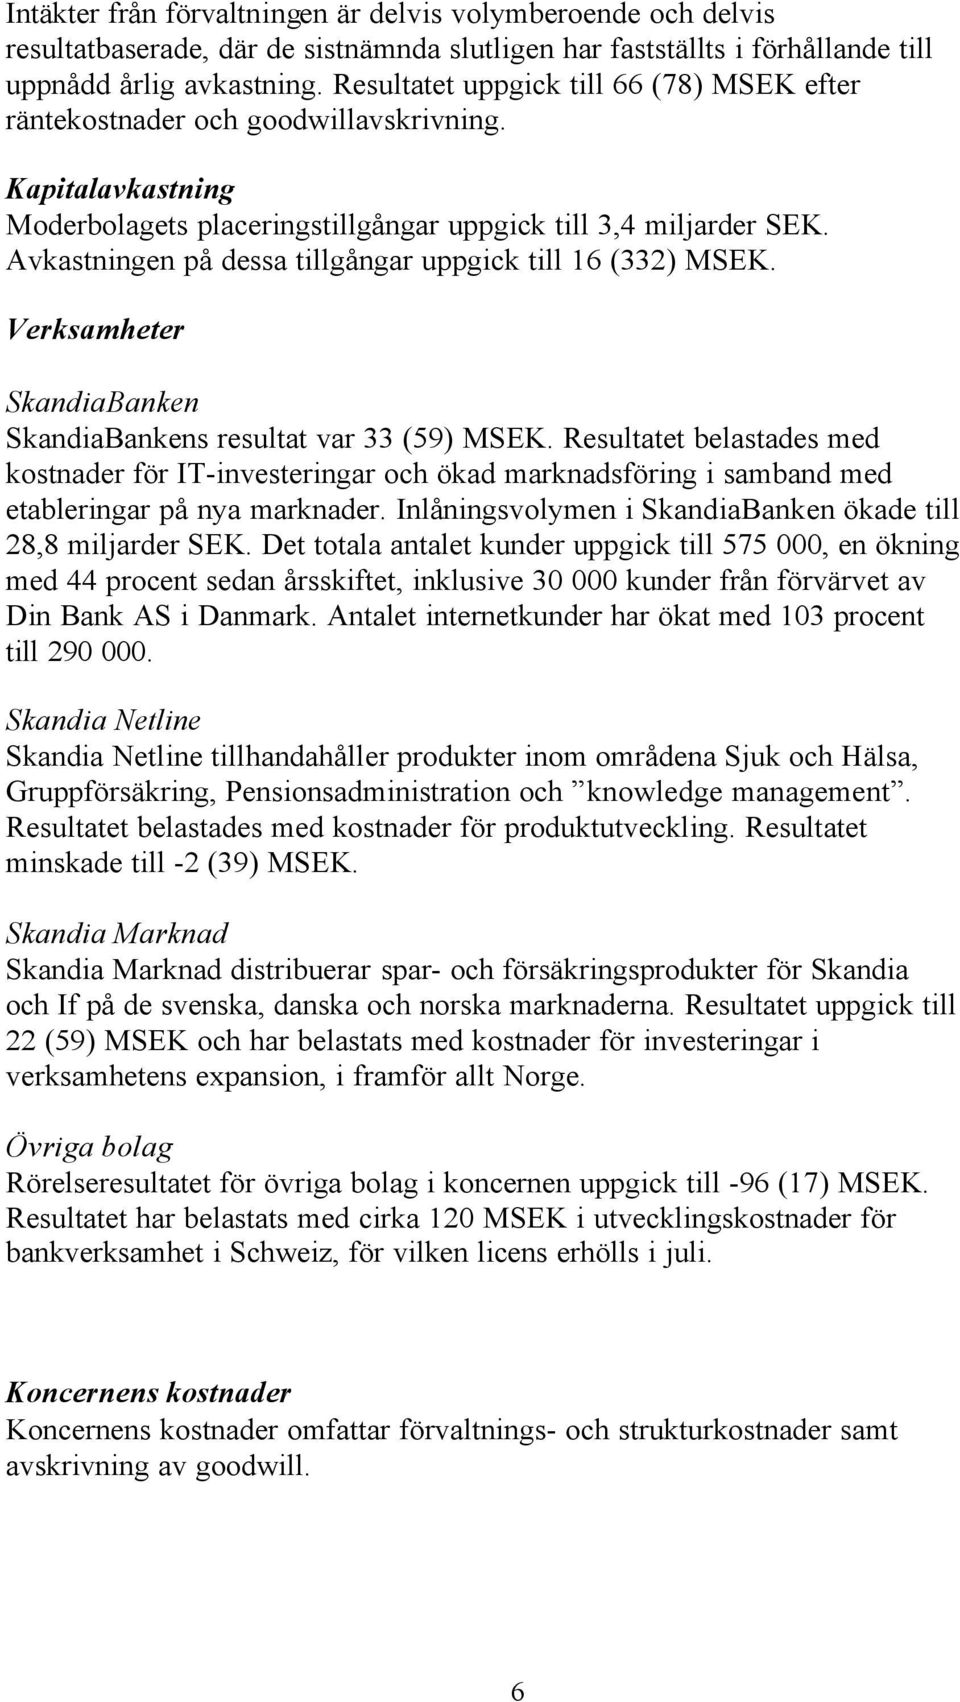 Avkastningen på dessa tillgångar uppgick till 16 (332) MSEK. Verksamheter SkandiaBanken SkandiaBankens resultat var 33 (59) MSEK.